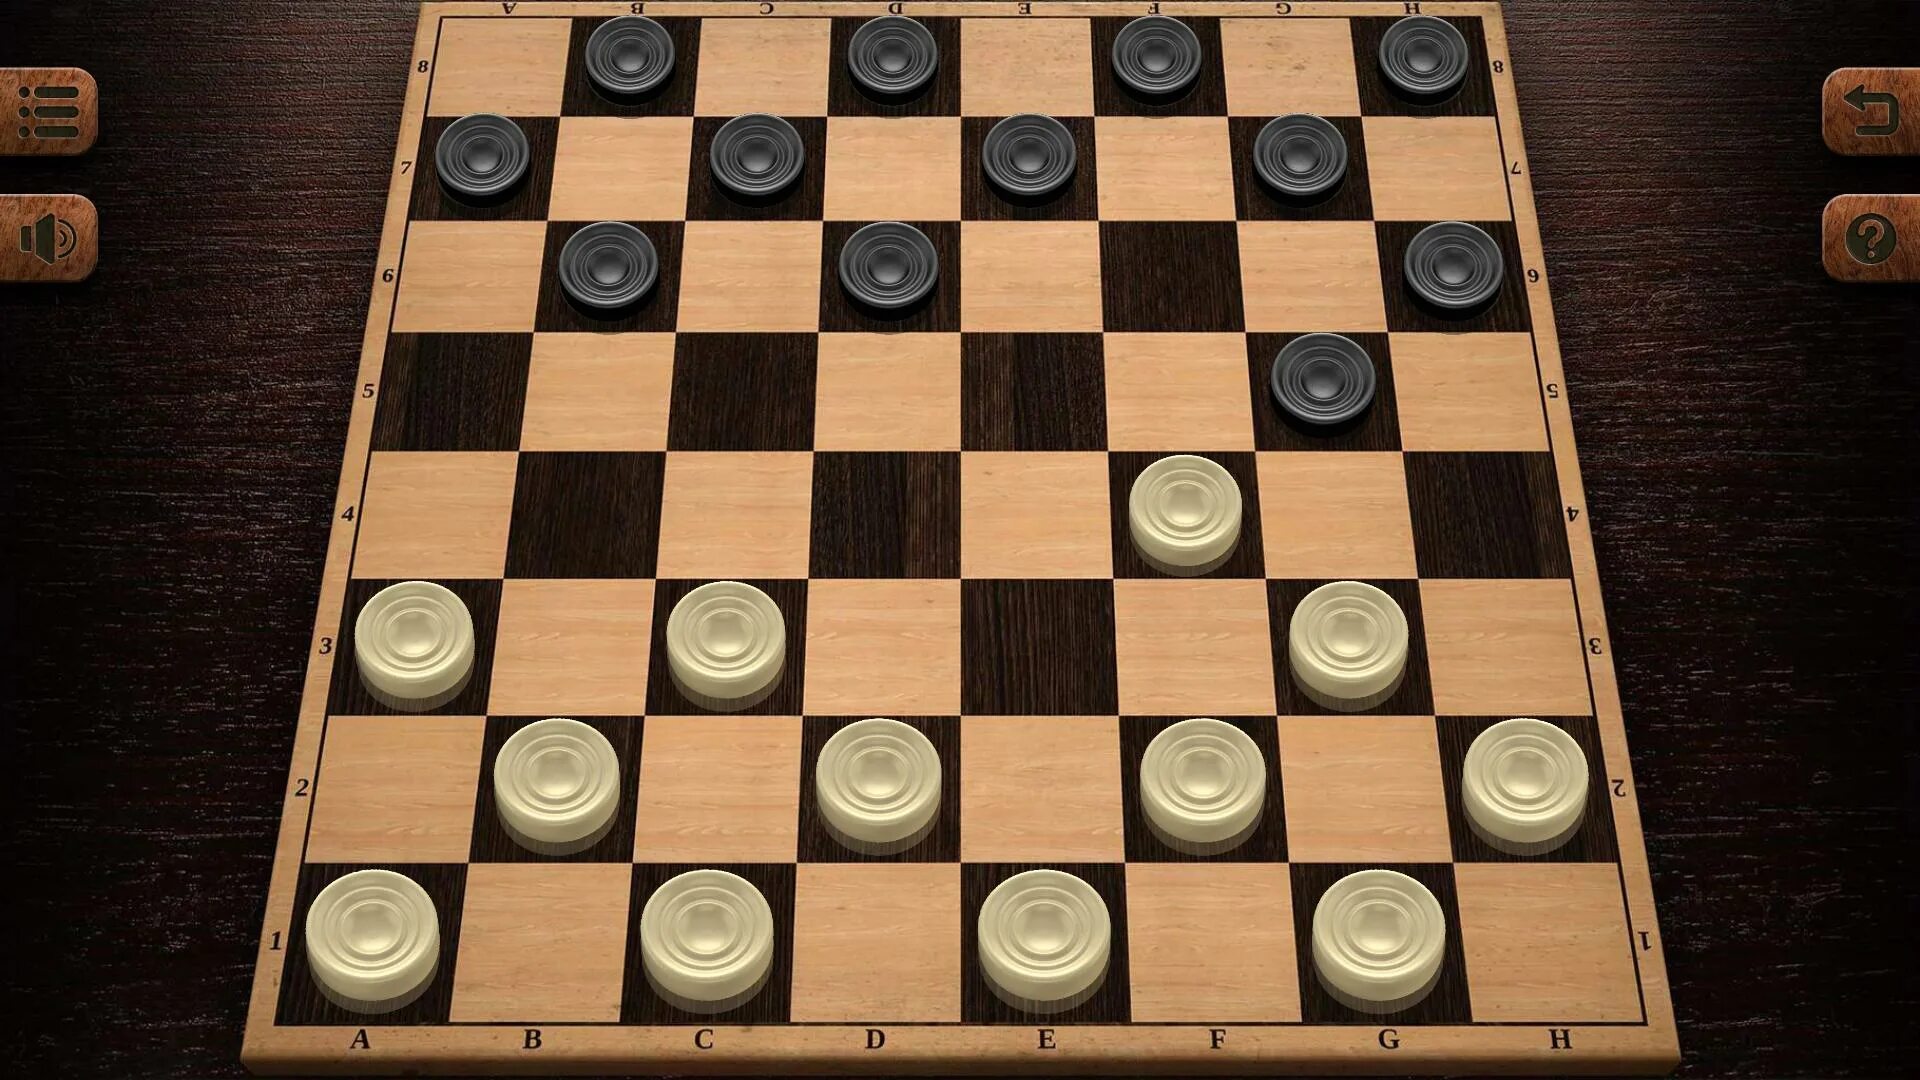 Checkers game. Комбинации по русским шашкам. Ловушки в шашках в начале. Золотые шашки с логотипом.